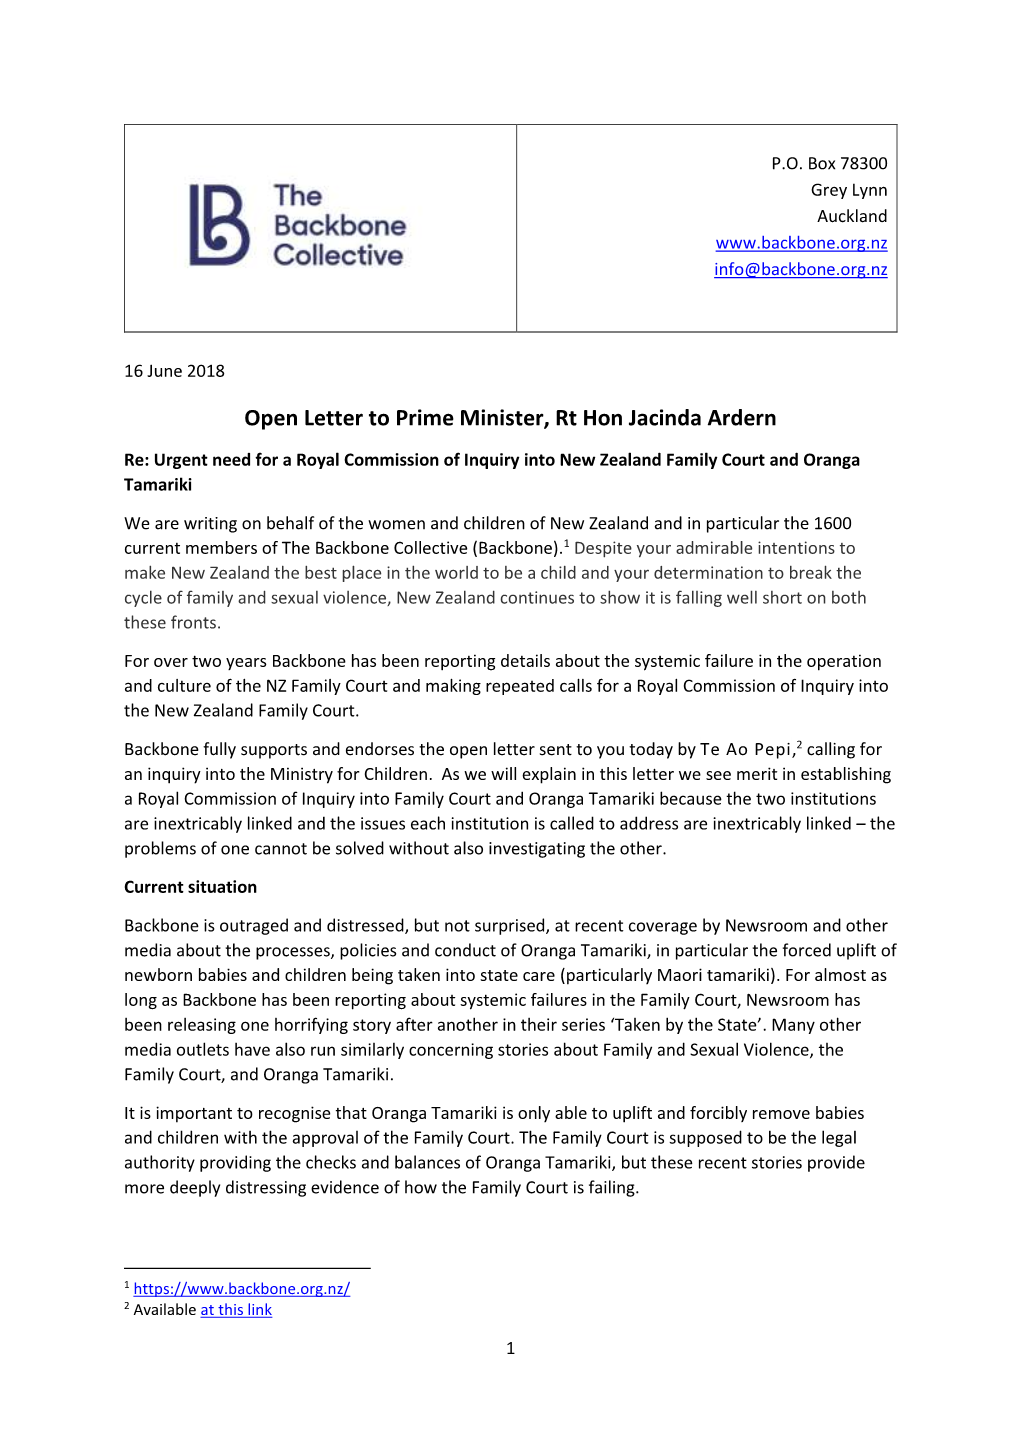 Open Letter to Prime Minister, Rt Hon Jacinda Ardern